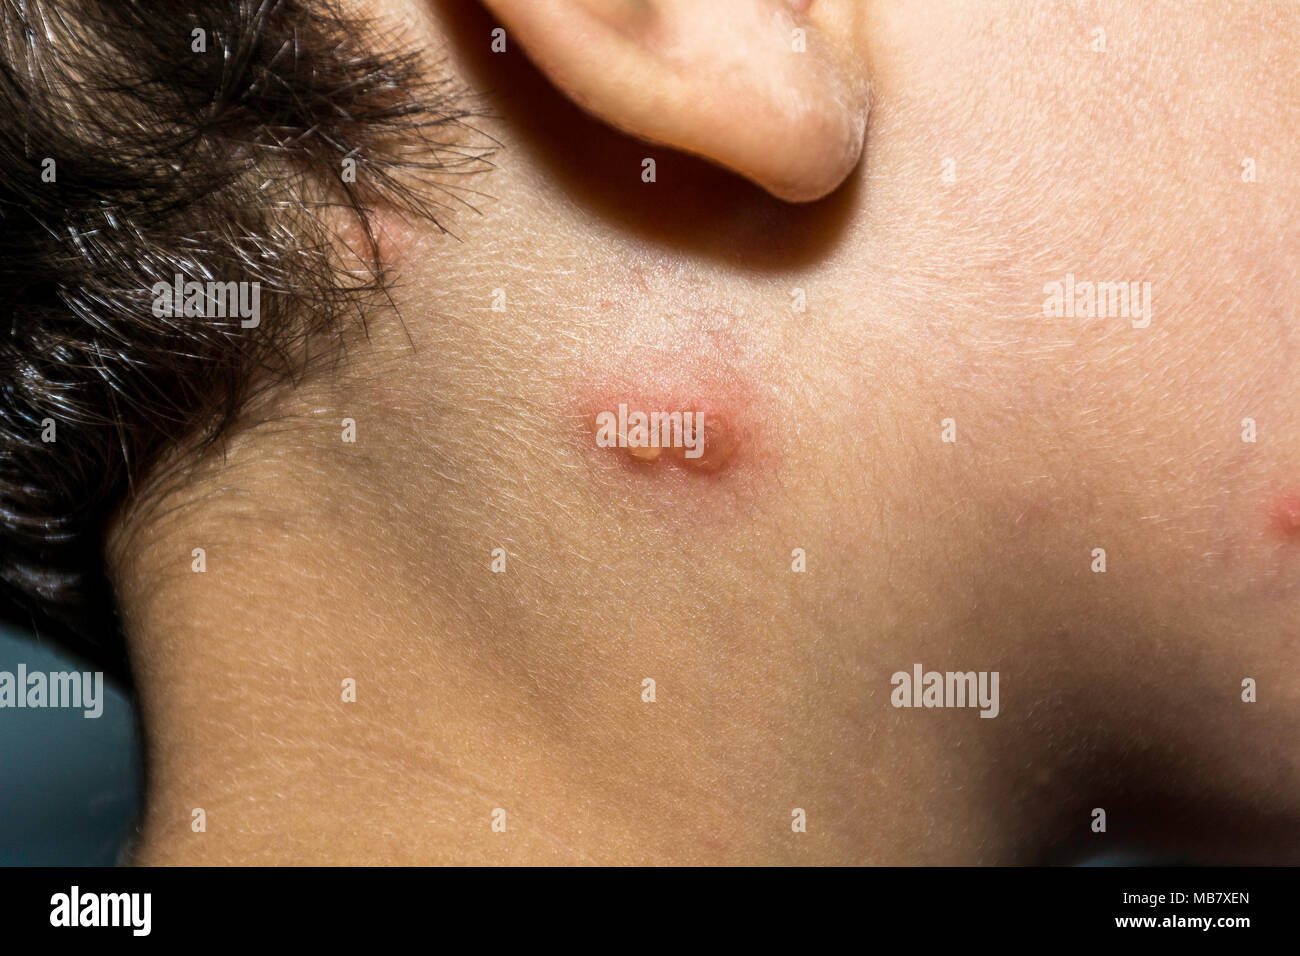 Gros plan du virus de la varicelle ou la varicelle de l'enfant bulle d'éruptions cutanées sur le visage et le cou. Concept de dermatologie. Banque D'Images